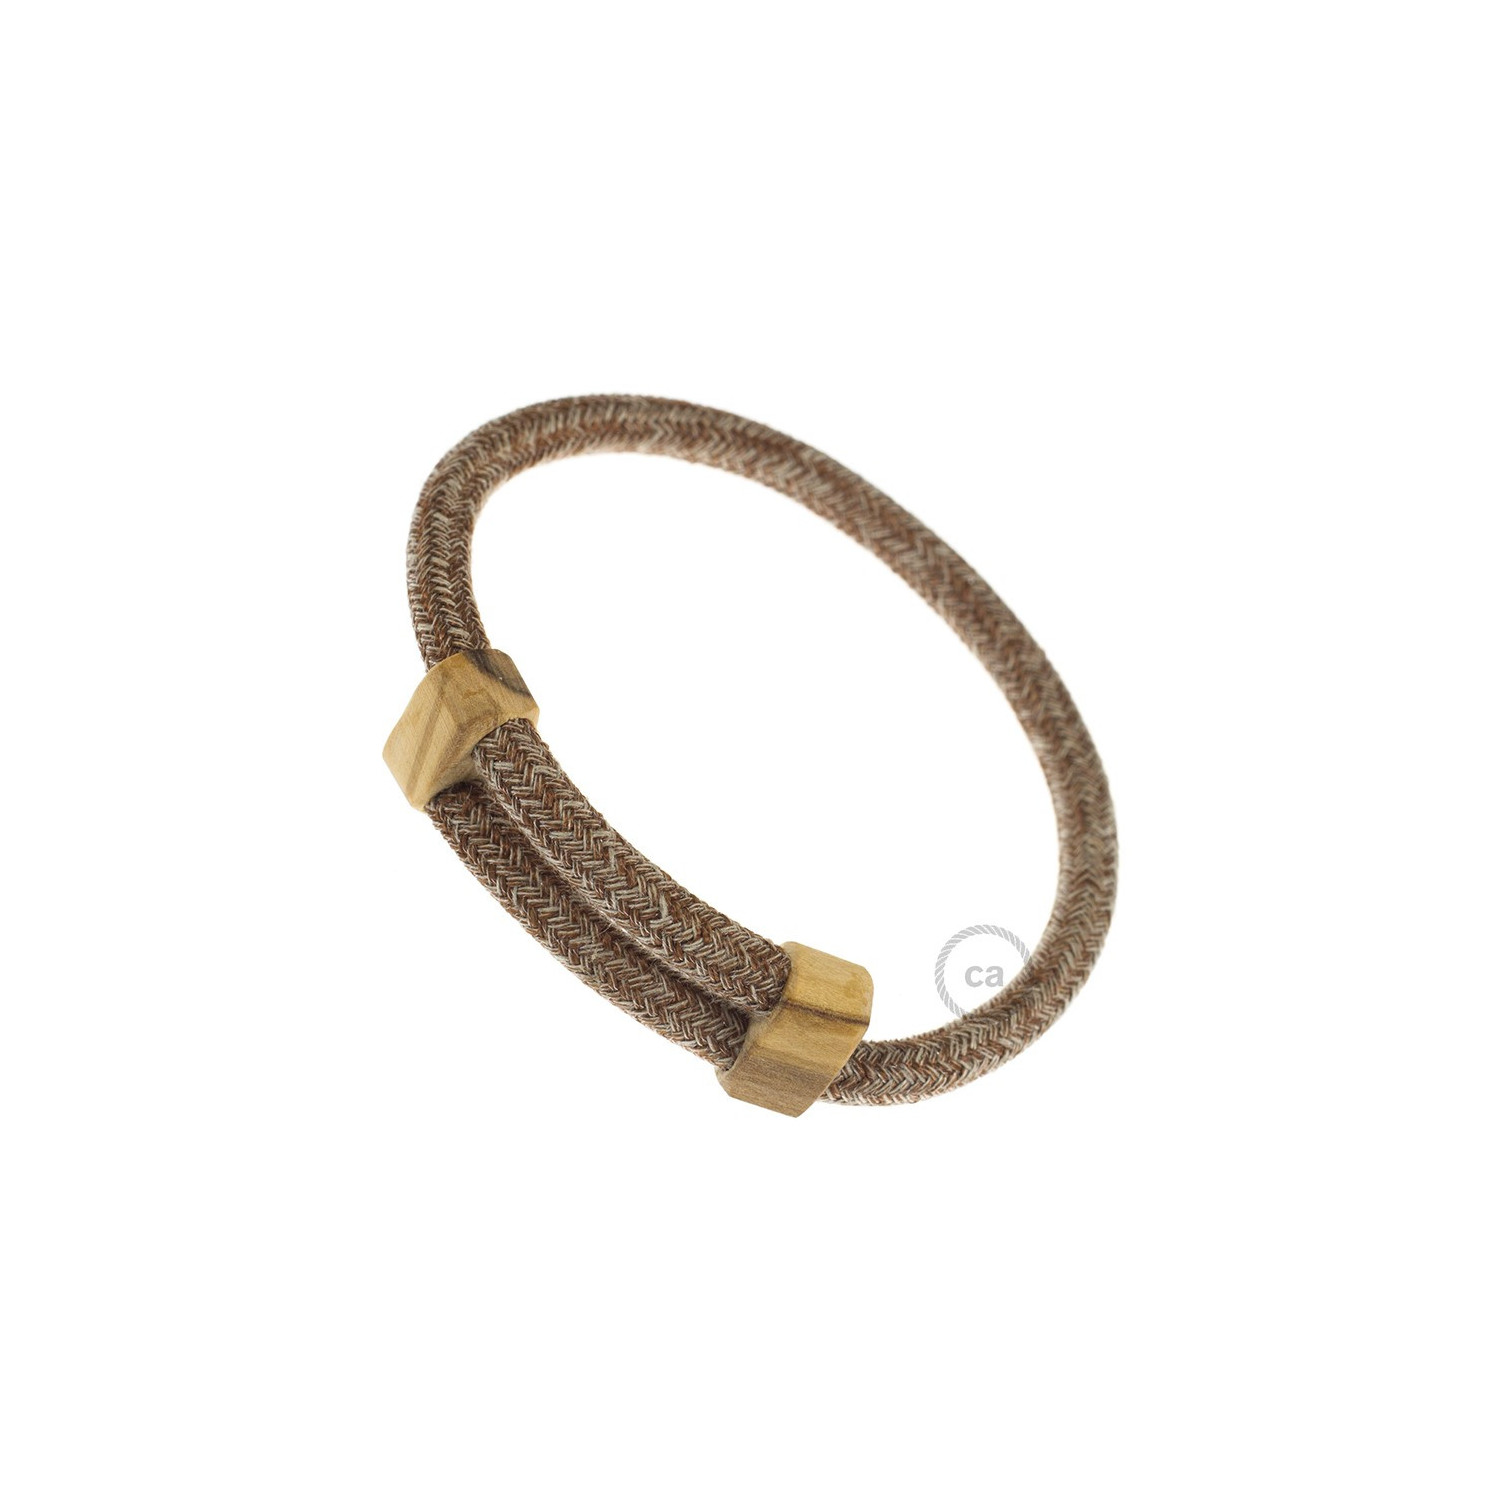 Creative-Bracelet in Cotone e Lino naturale Tweed Ruggine RS82. Chiusura scorrevole in legno. Made in Italy.